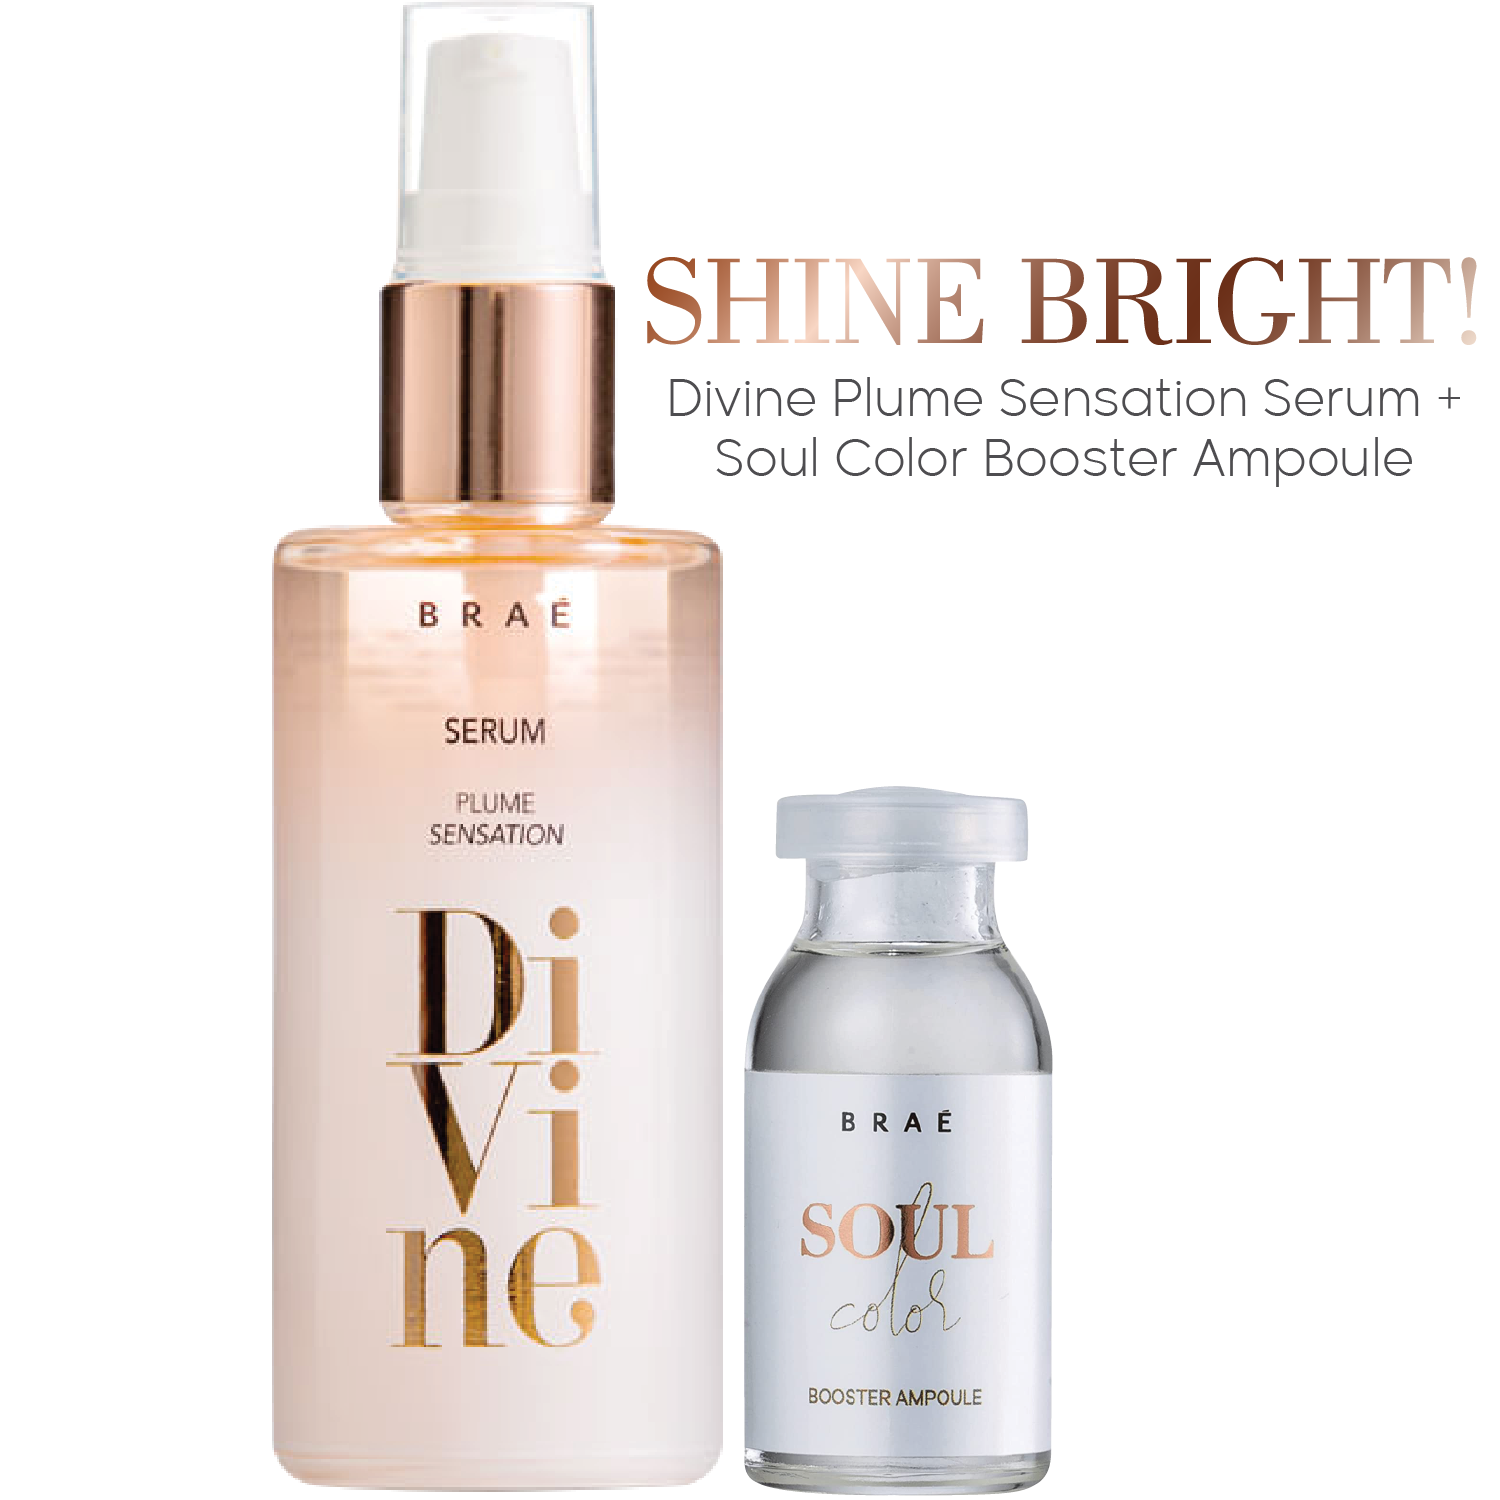 Shine Bright! Divine Plume Sensation Serum + Soul Color Booster Ampoule